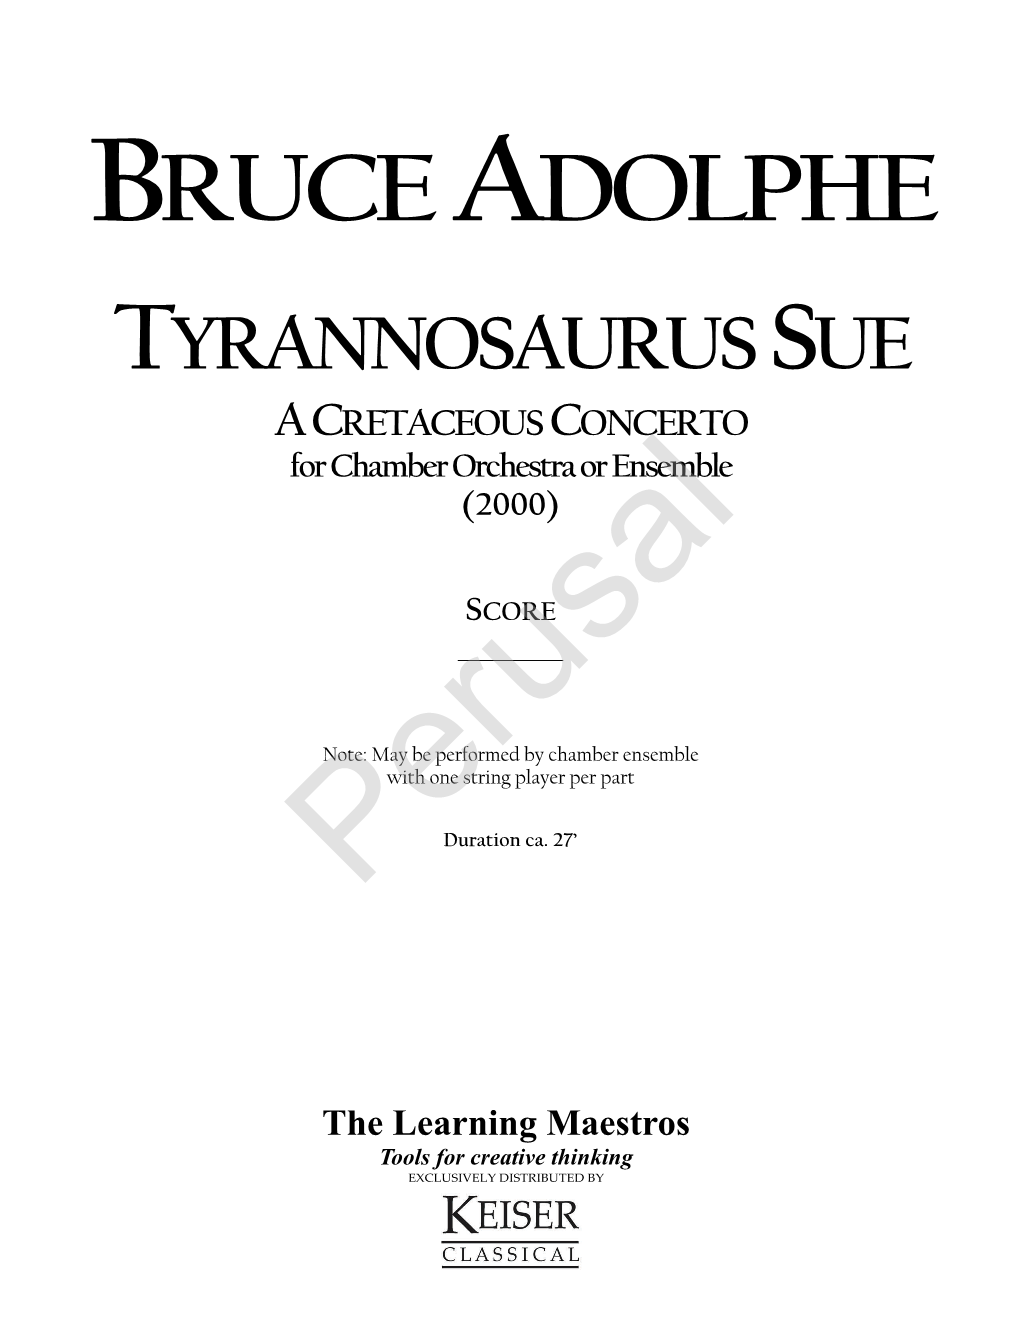 TYRANNOSAURUS SUE a CRETACEOUS CONCERTO for Chamber Orchestra Or Ensemble (2000)